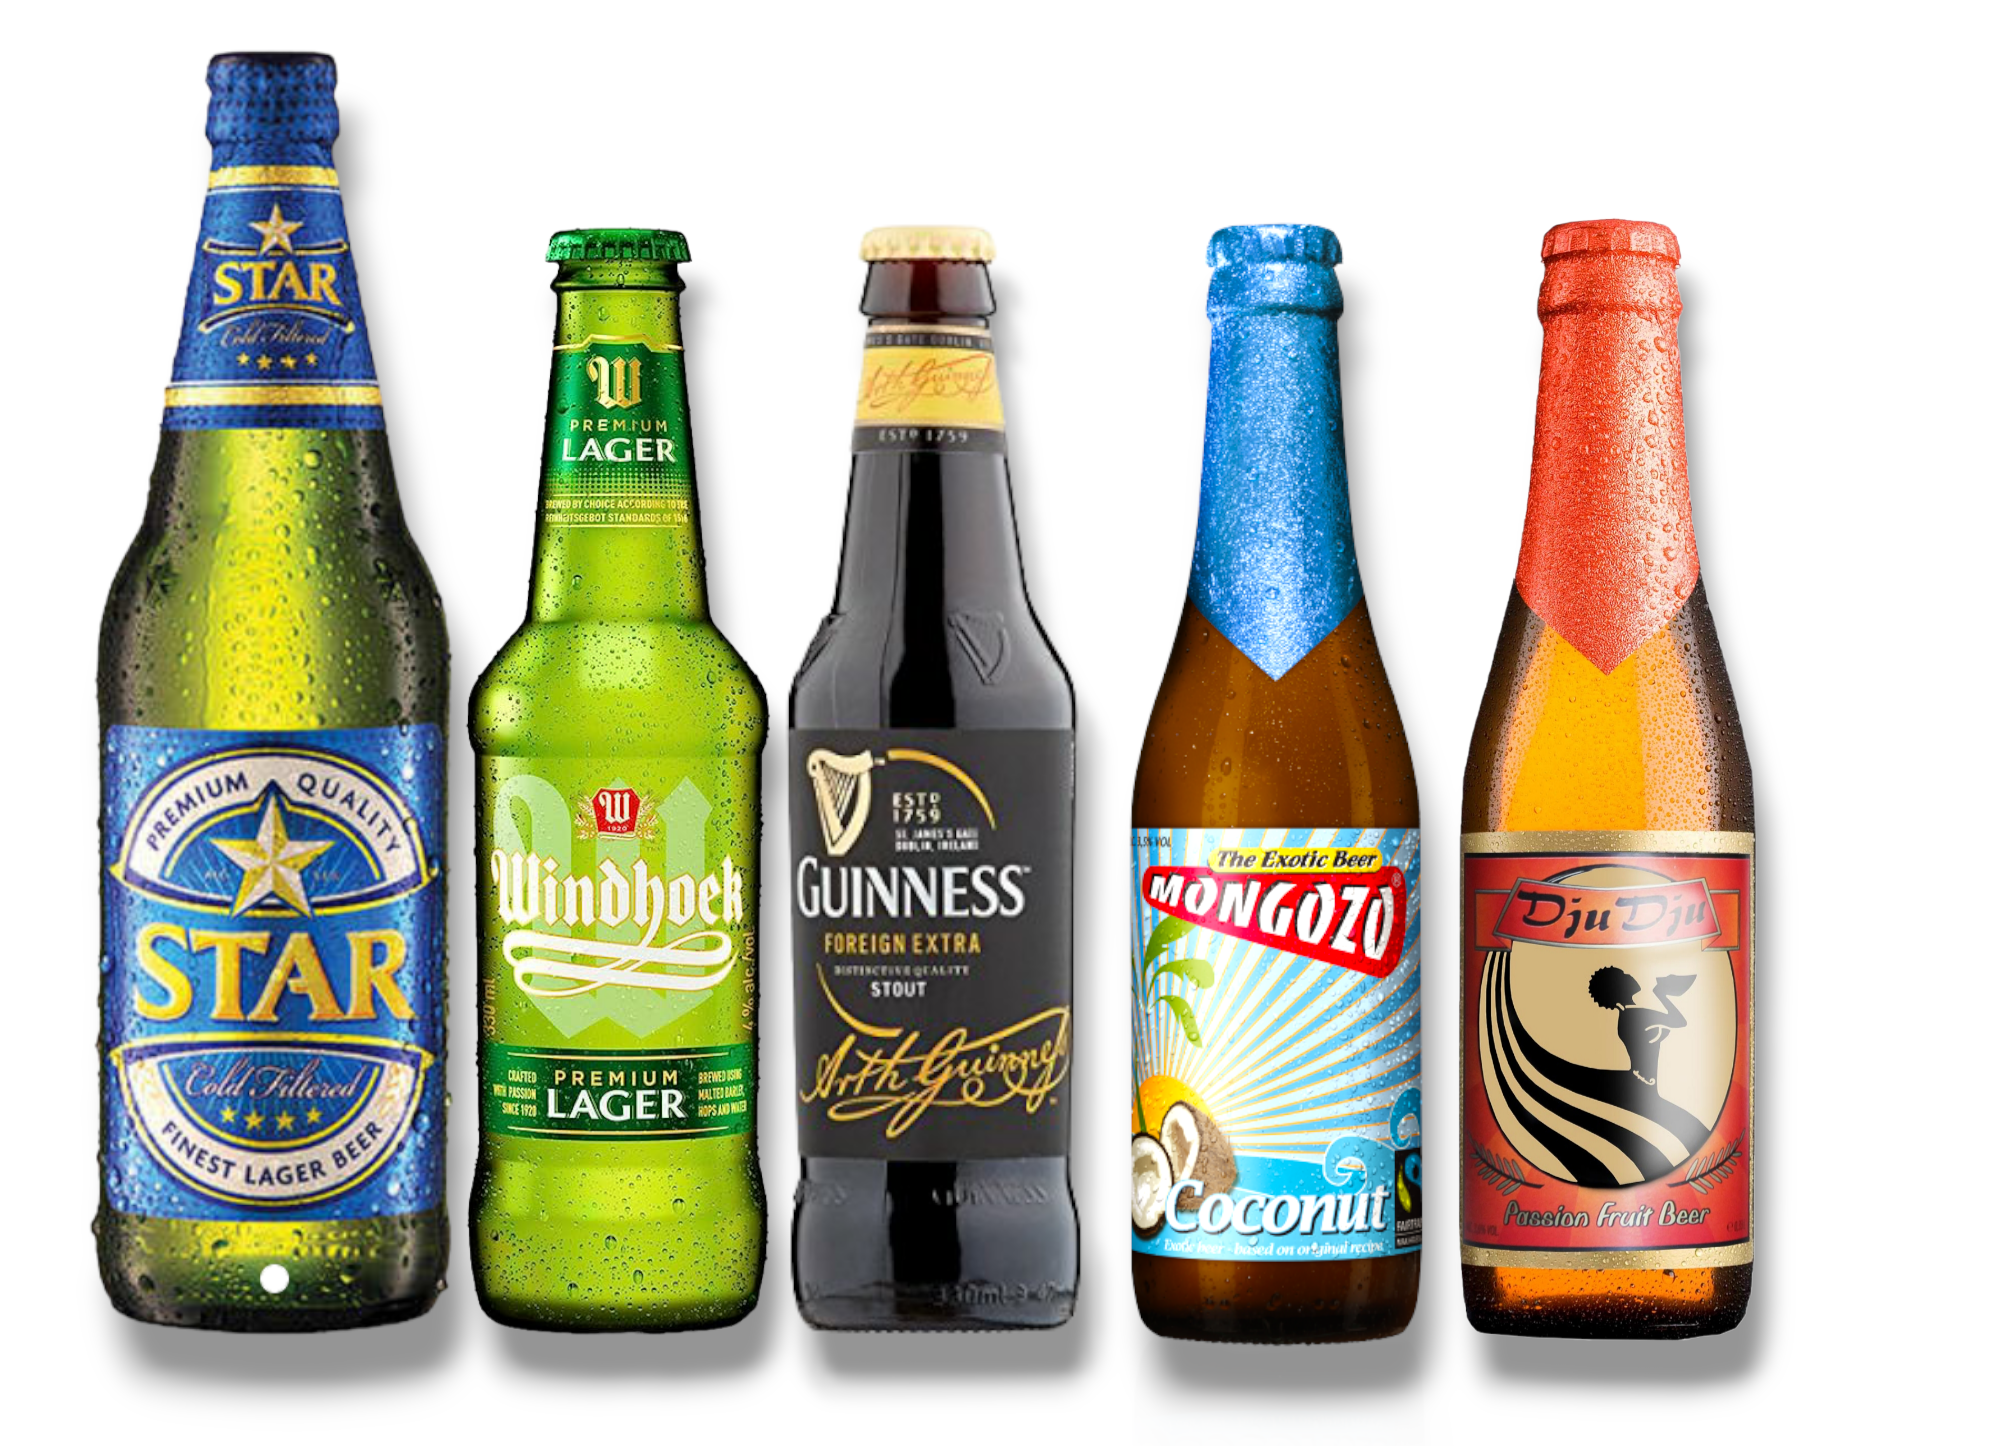 Afrika Probierpaket- Teste Nigeria, Ghana, und Namibia mit 5 beliebten Sorten Bier aus Afrika